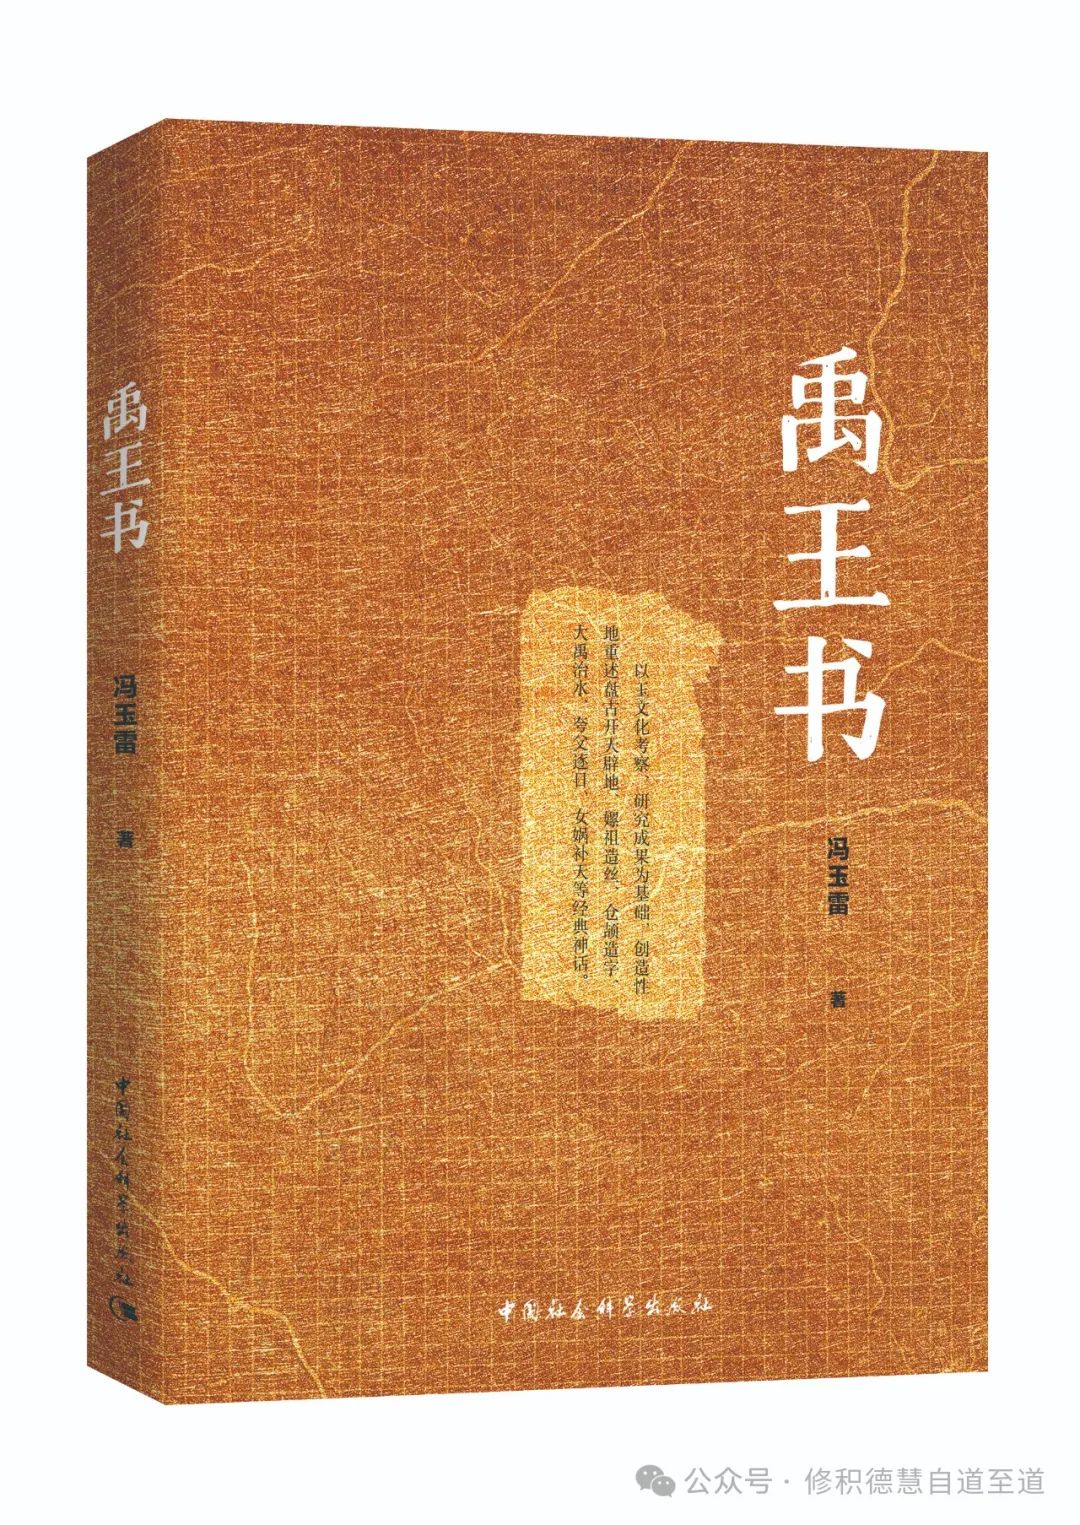 冯玉雷新书《禹王书》正式出版发行